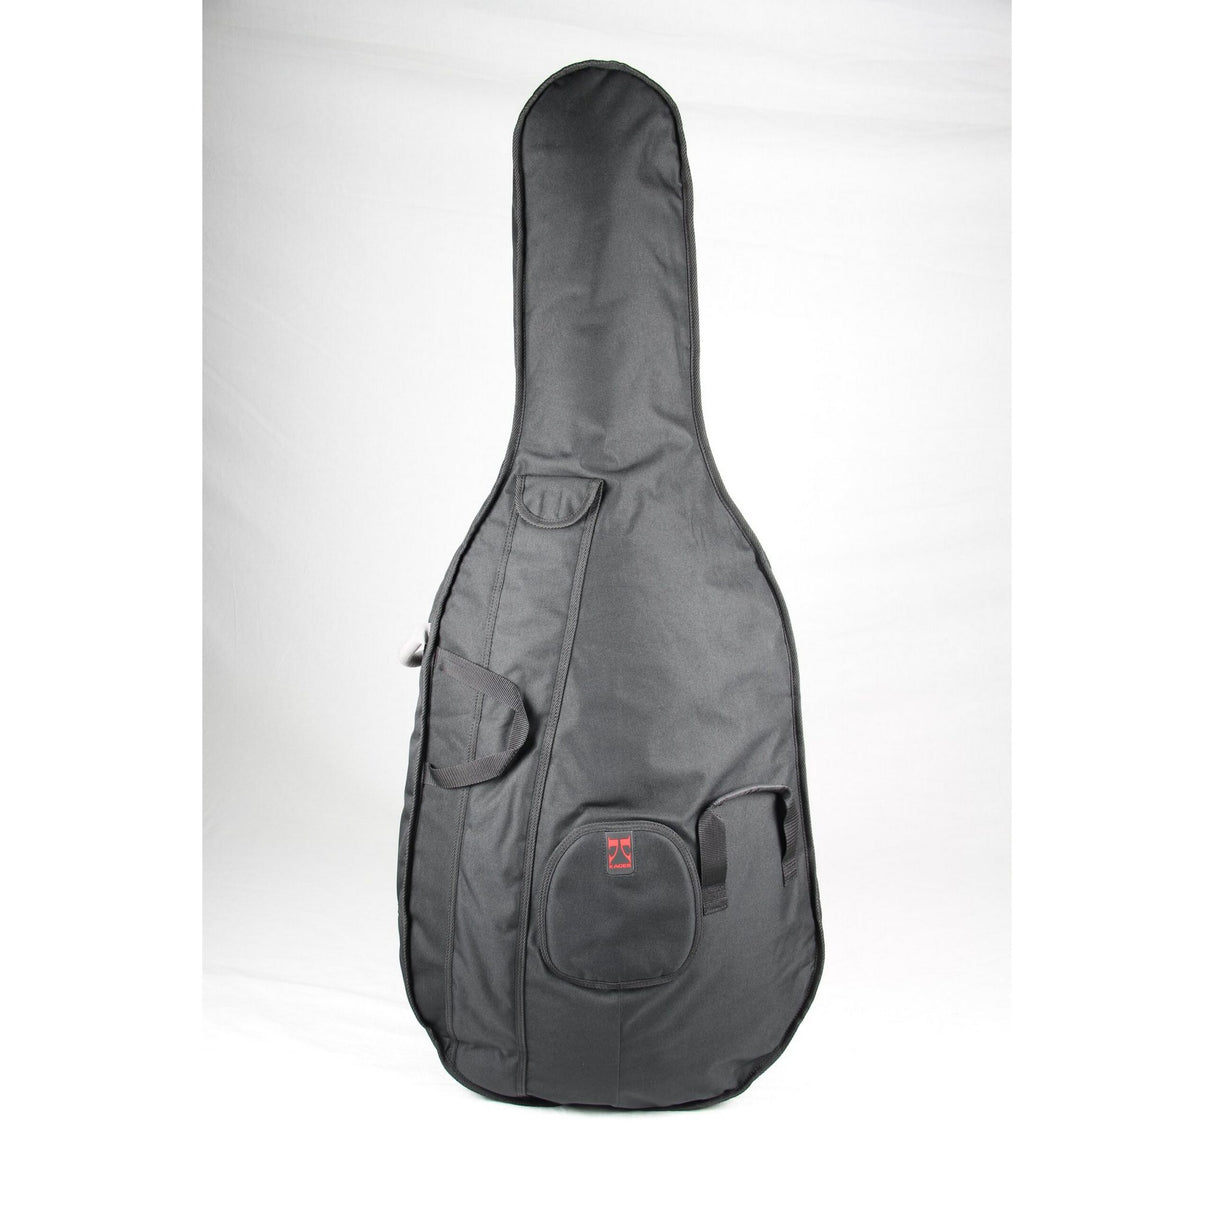 Kaces UKUB-3/4 University Series 3/4 Size Bass Bag